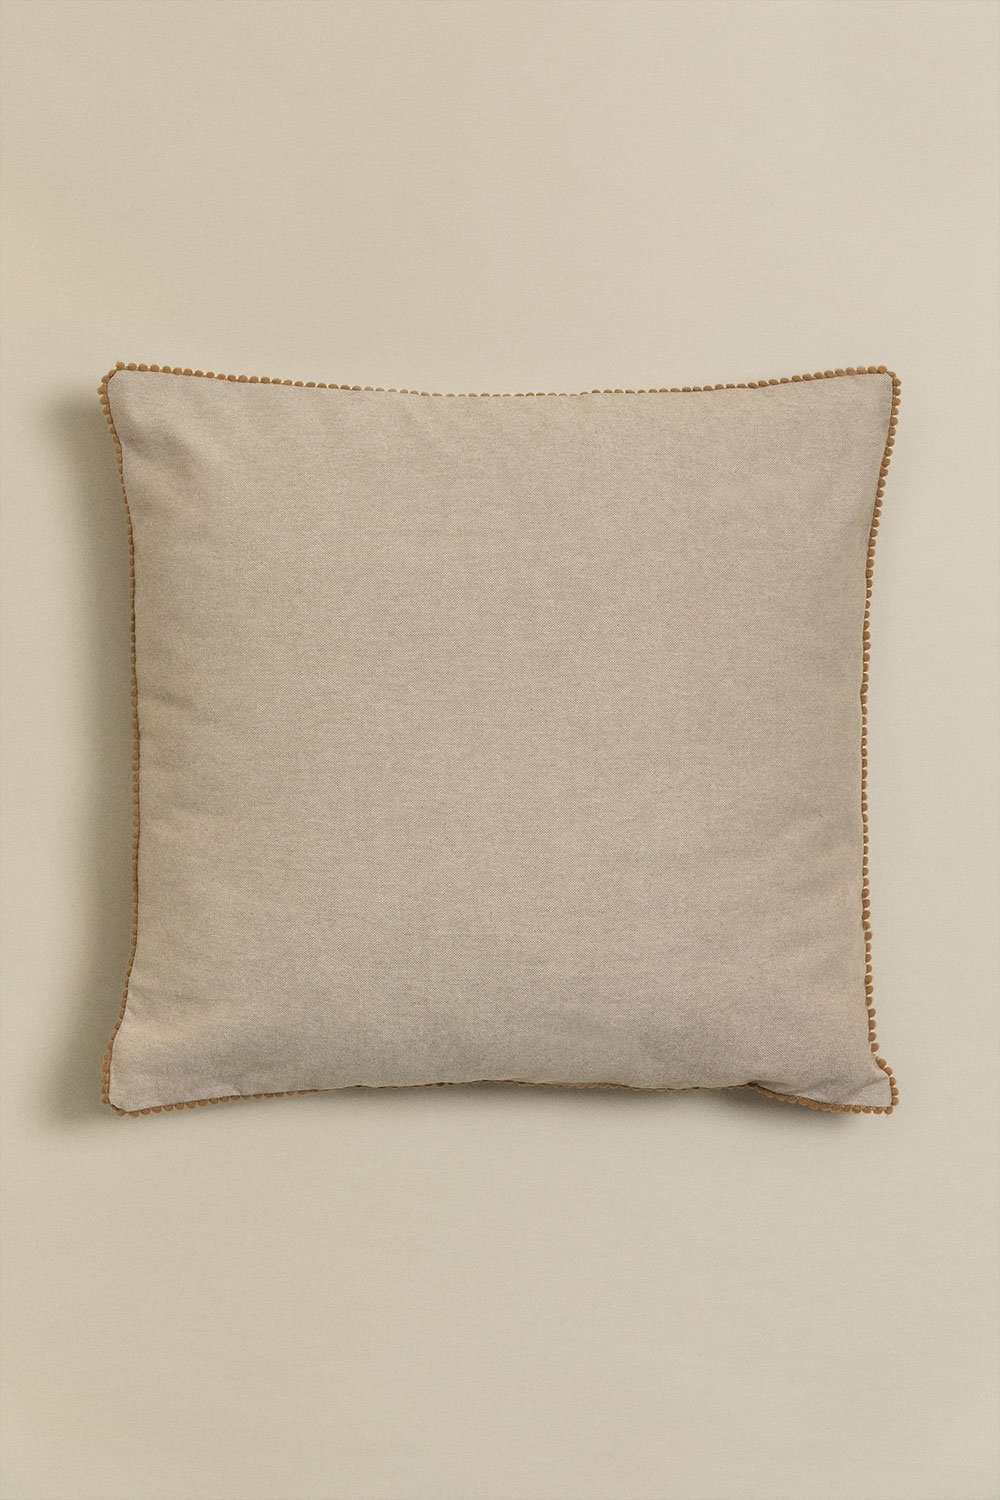 Coussin carré en coton (45x45 cm) Marmai, image de la galerie 2